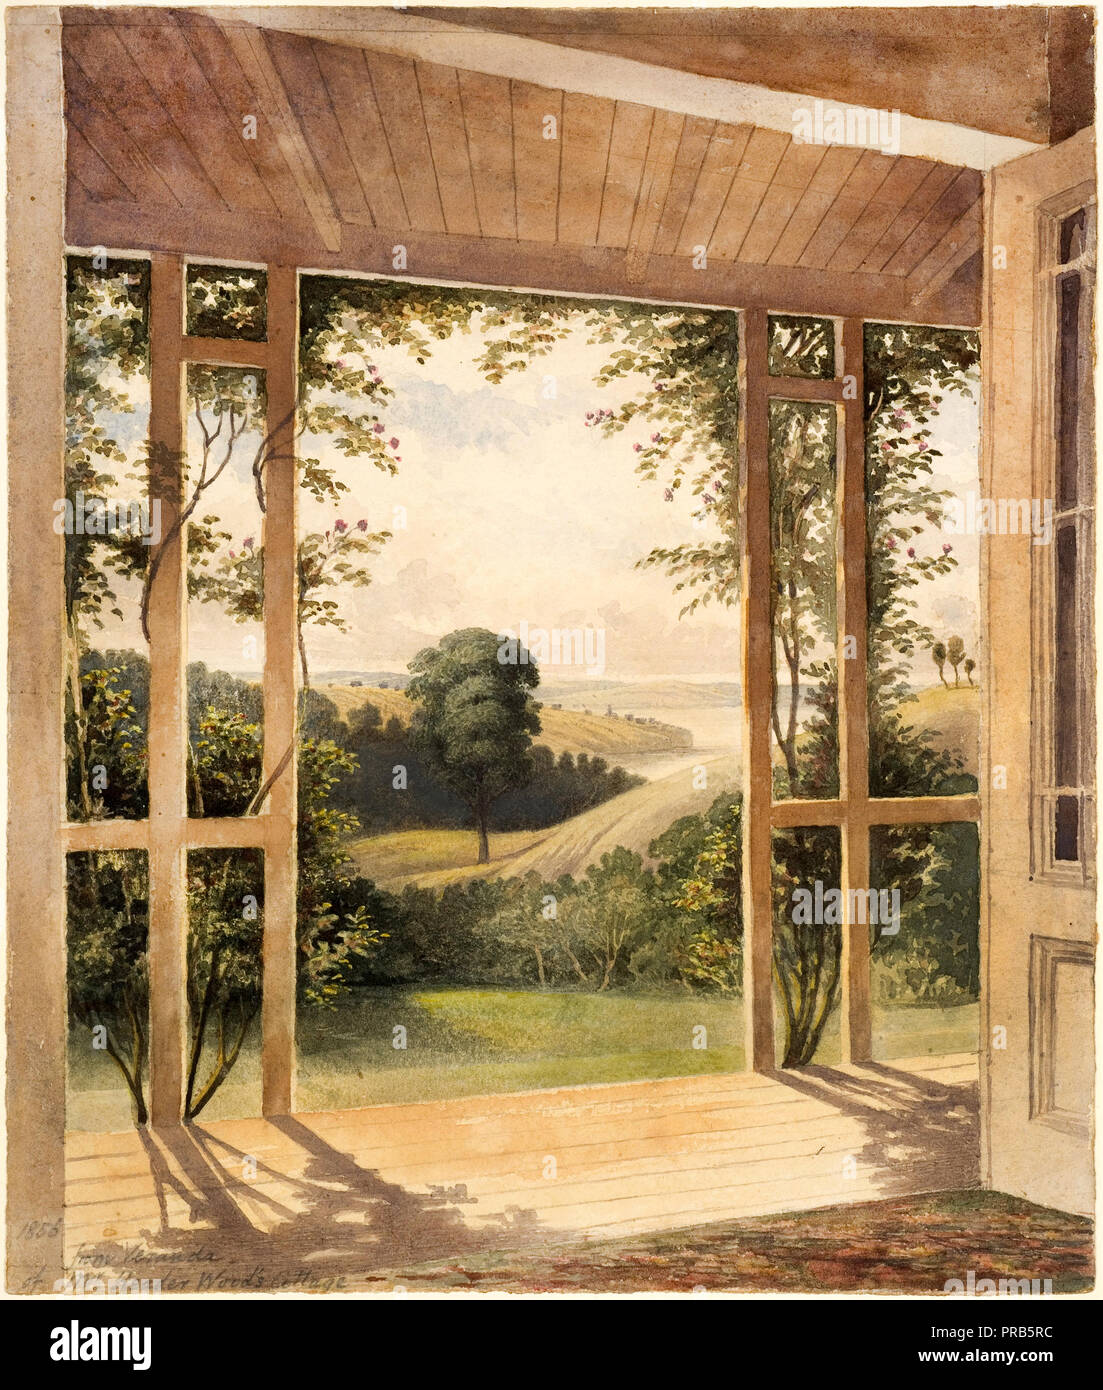 John Kinder, Auckland, depuis la terrasse de M. Reader's Cottage en bois Circa 1856 Aquarelle, Auckland Art Gallery Toi o Tamaki, Auckland, Nouvelle-Zélande. Banque D'Images